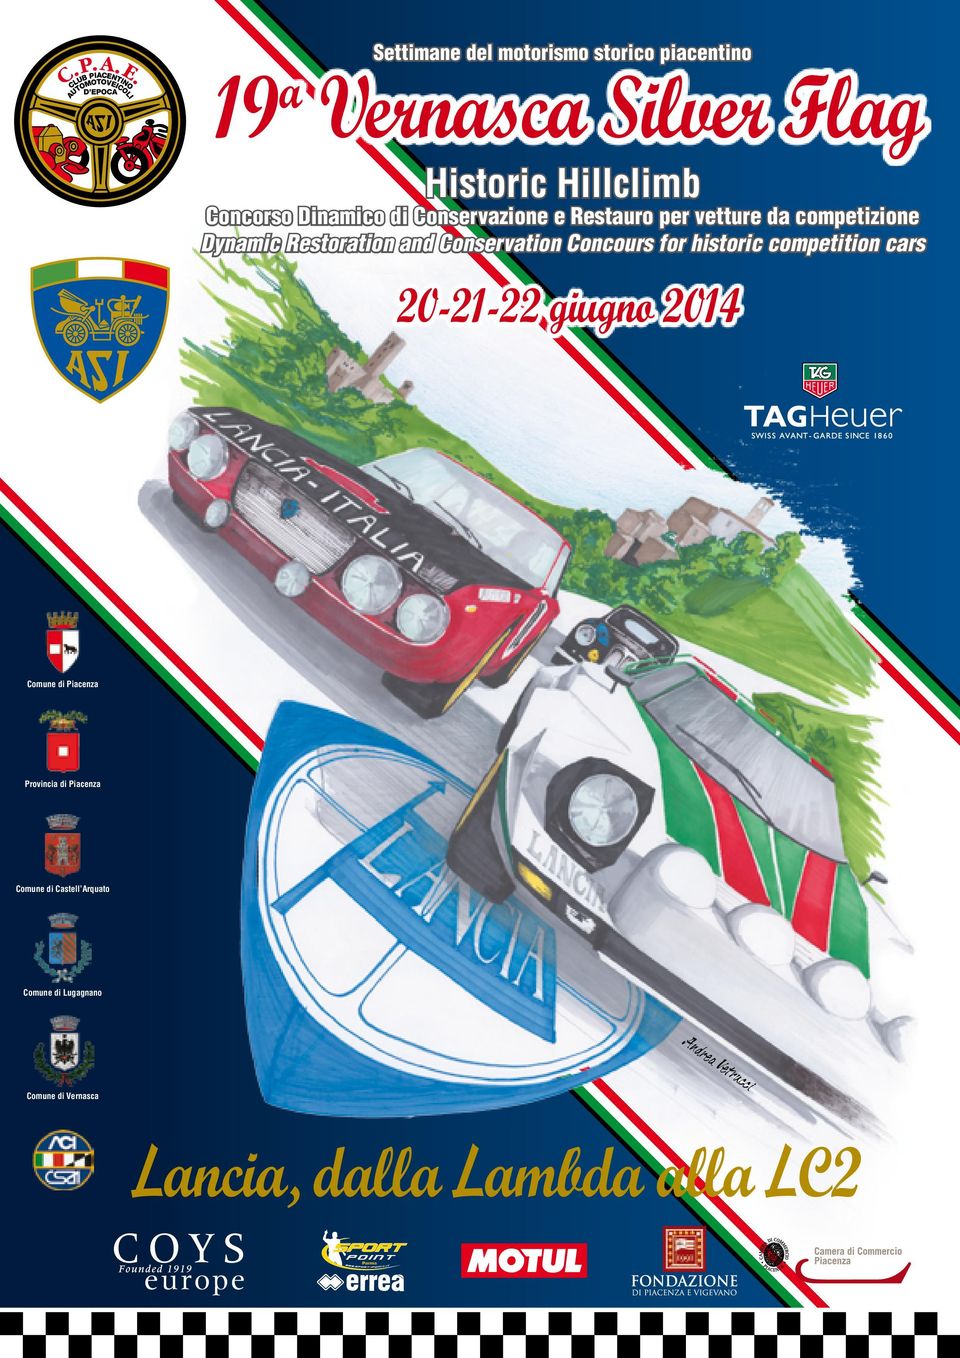 Concours for historic competition cars 20-21-22 giugno 2014 Comune di Piacenza Provincia di Piacenza